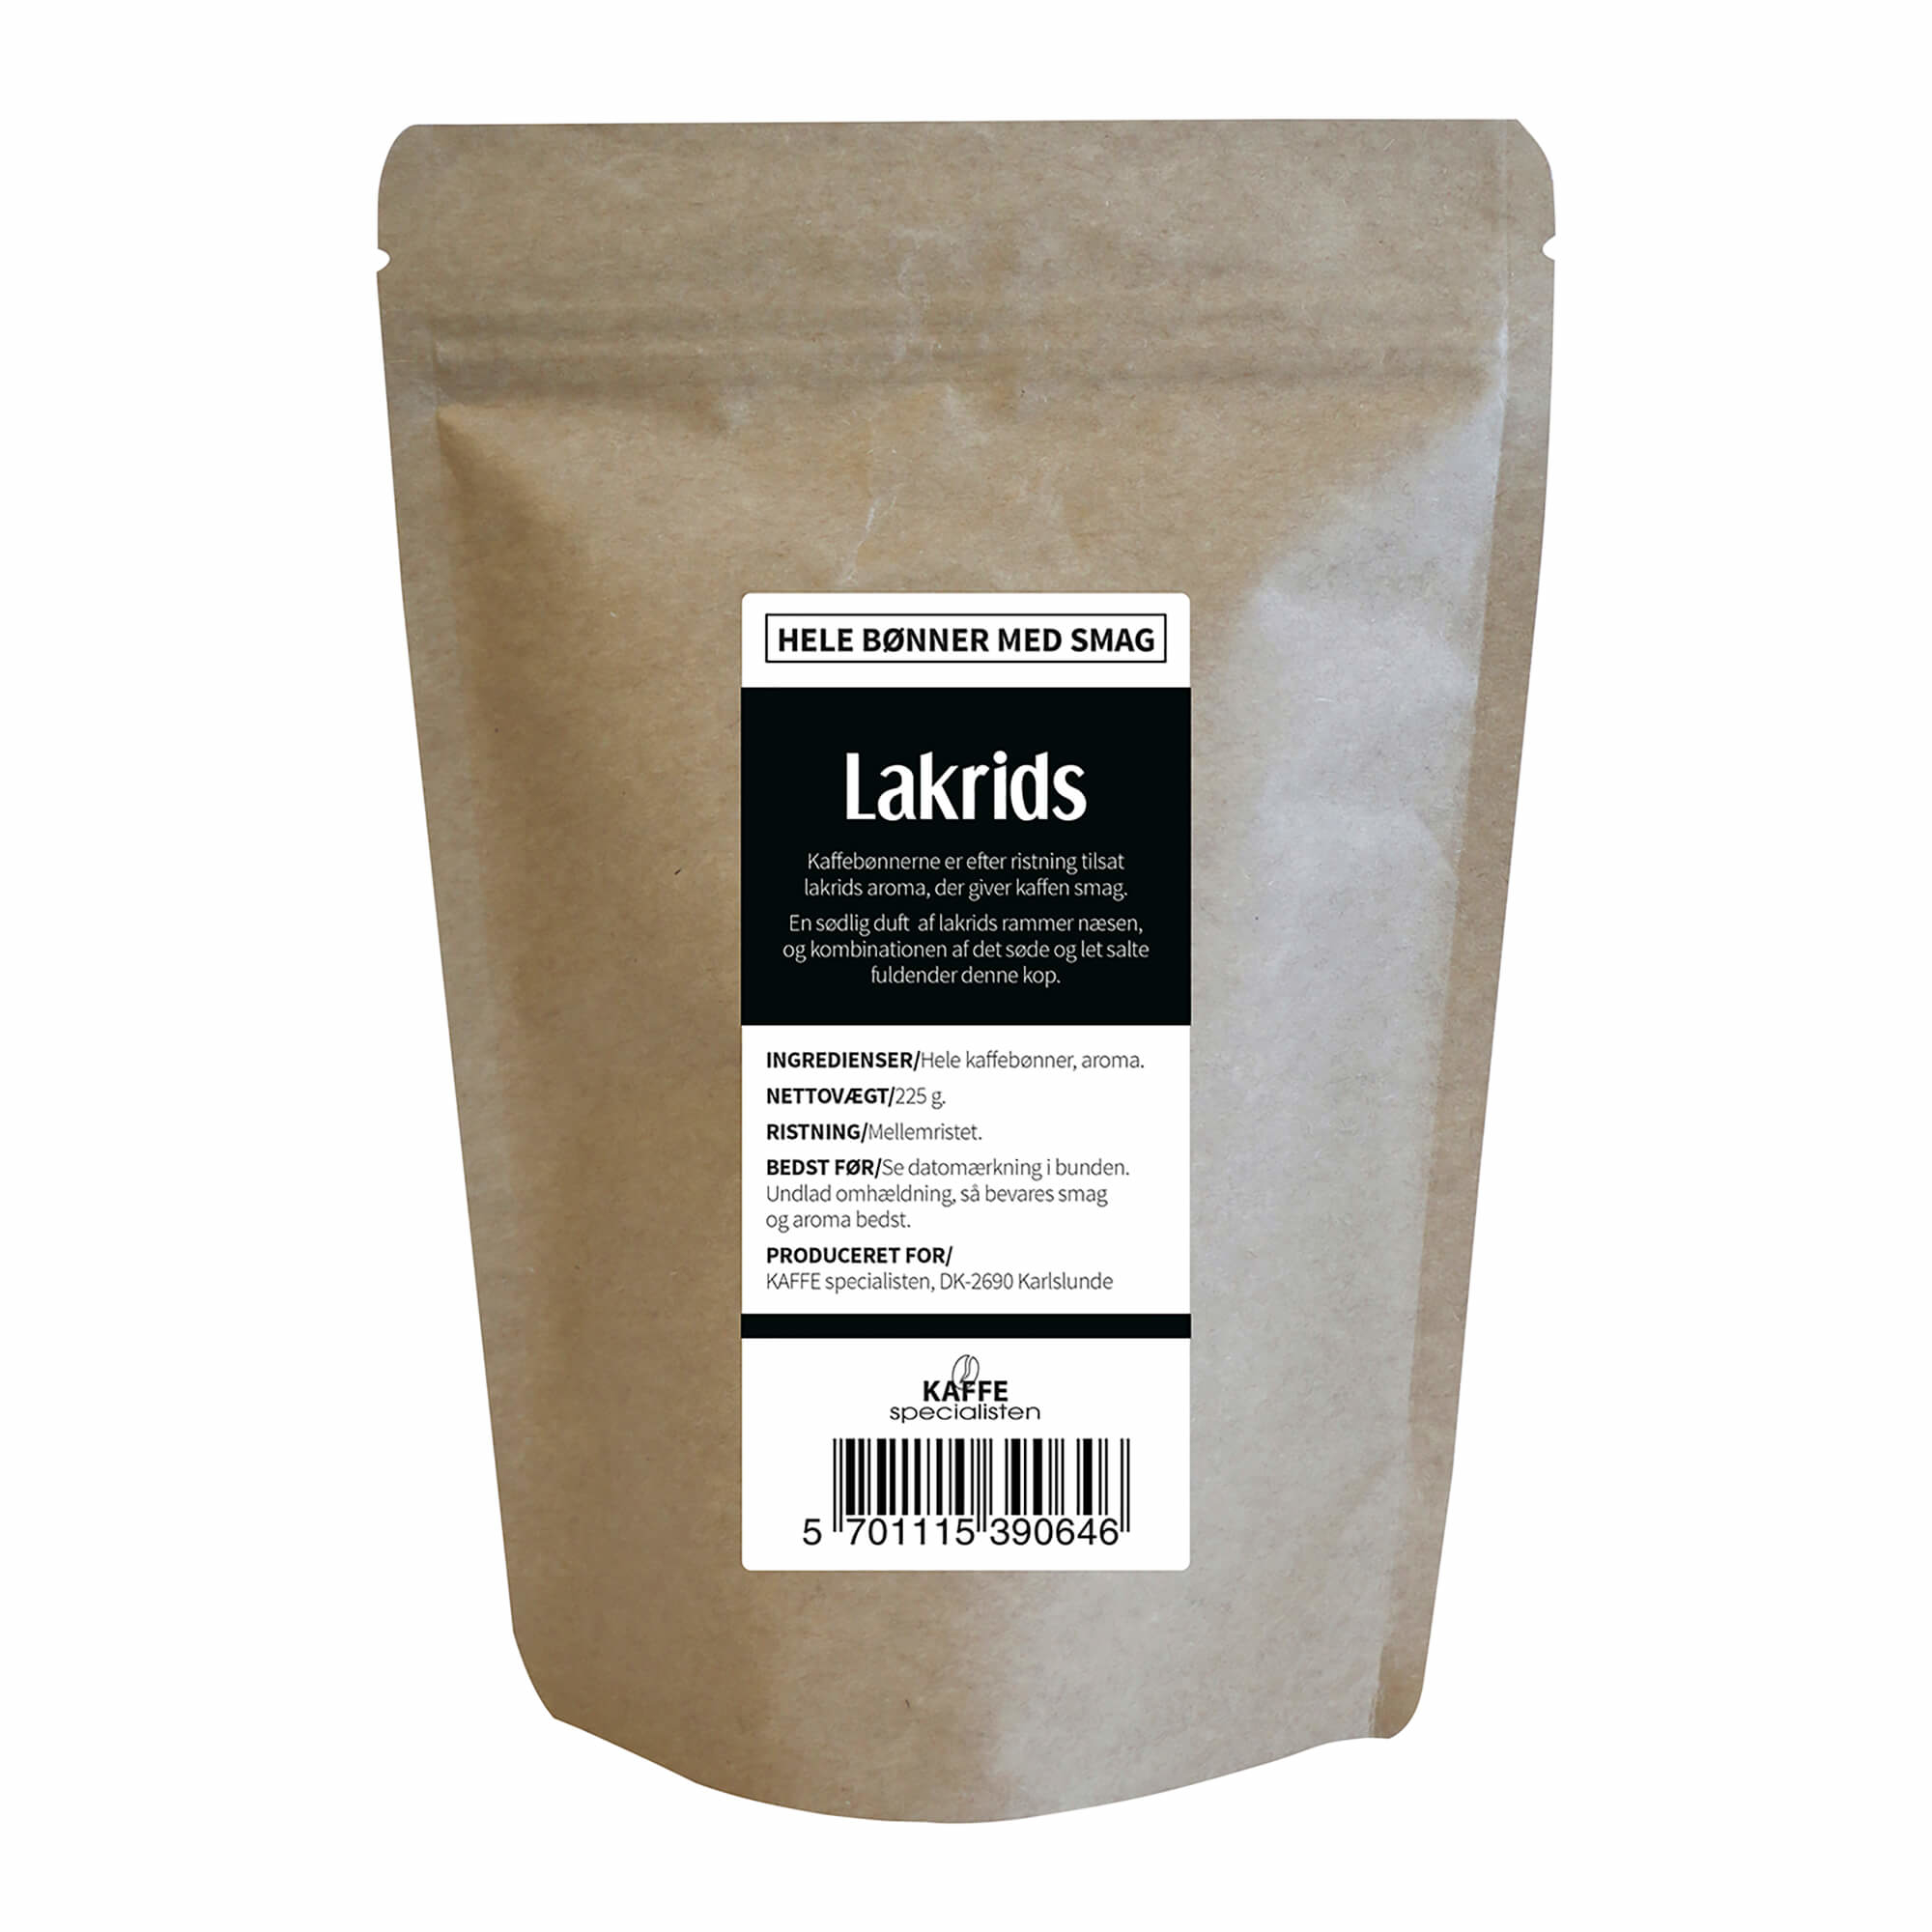 KAFFE Specialisten Kaffebønner Lakrids Smag